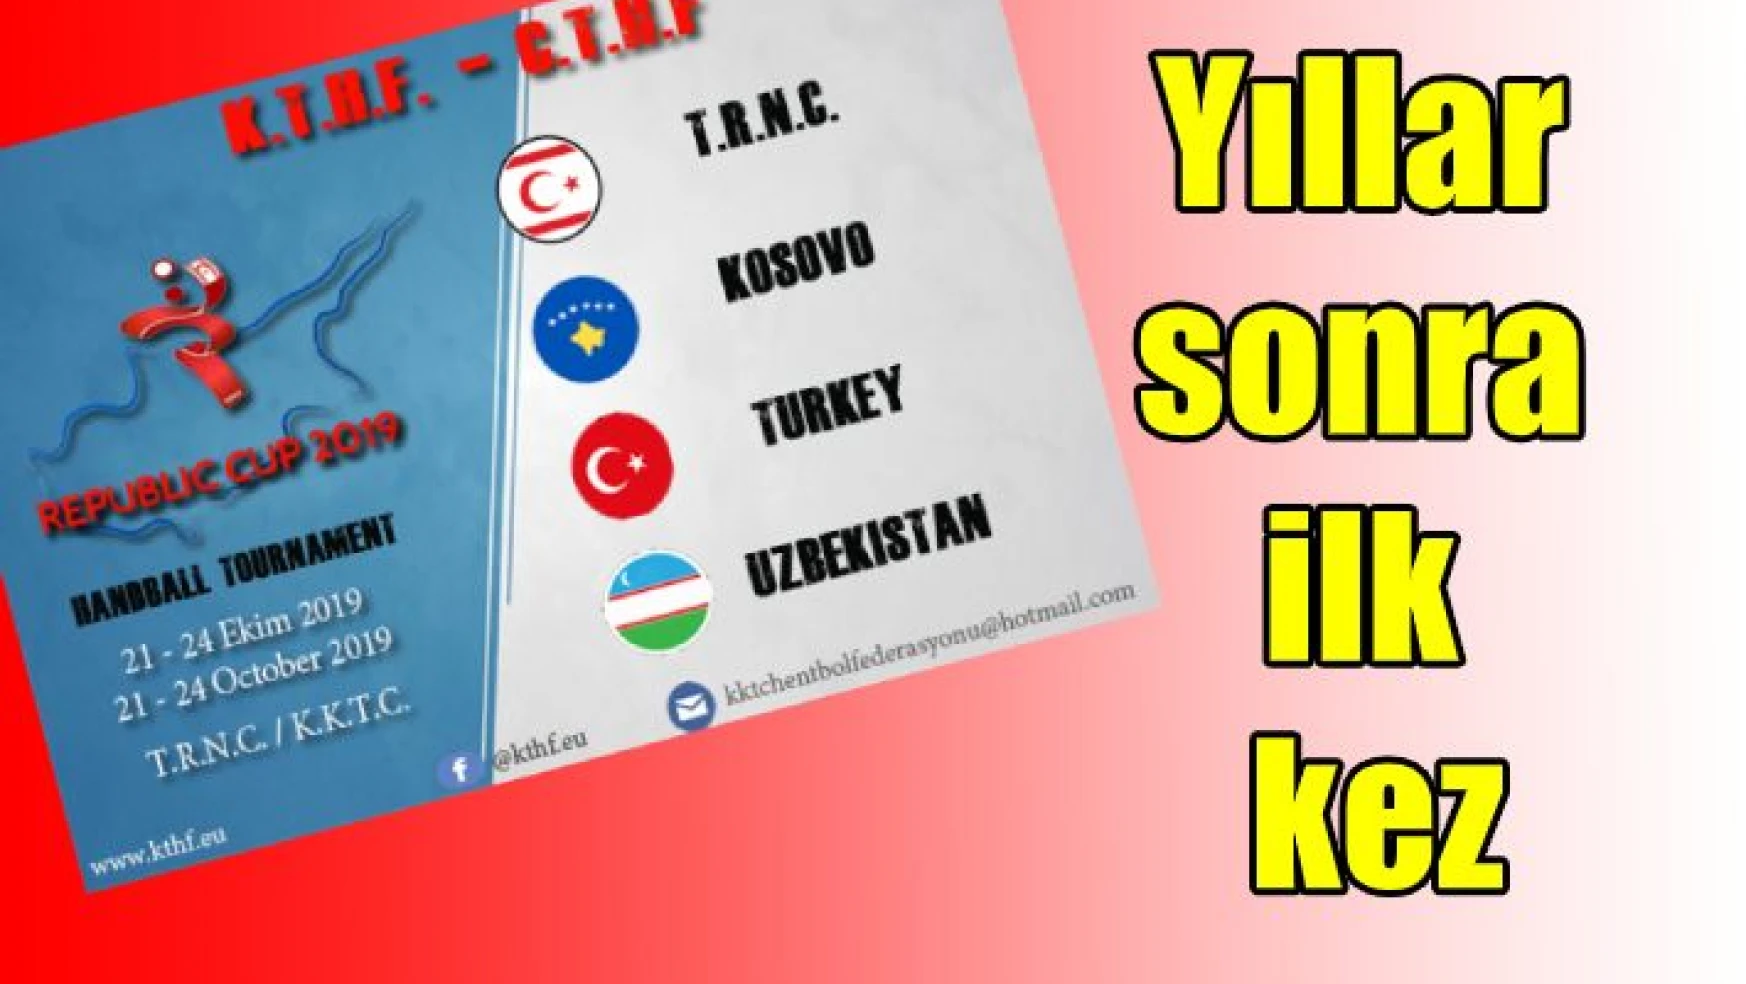 Özbekistan, Kosova, Türkiye ve KKTC özel turnuvada yer alacak